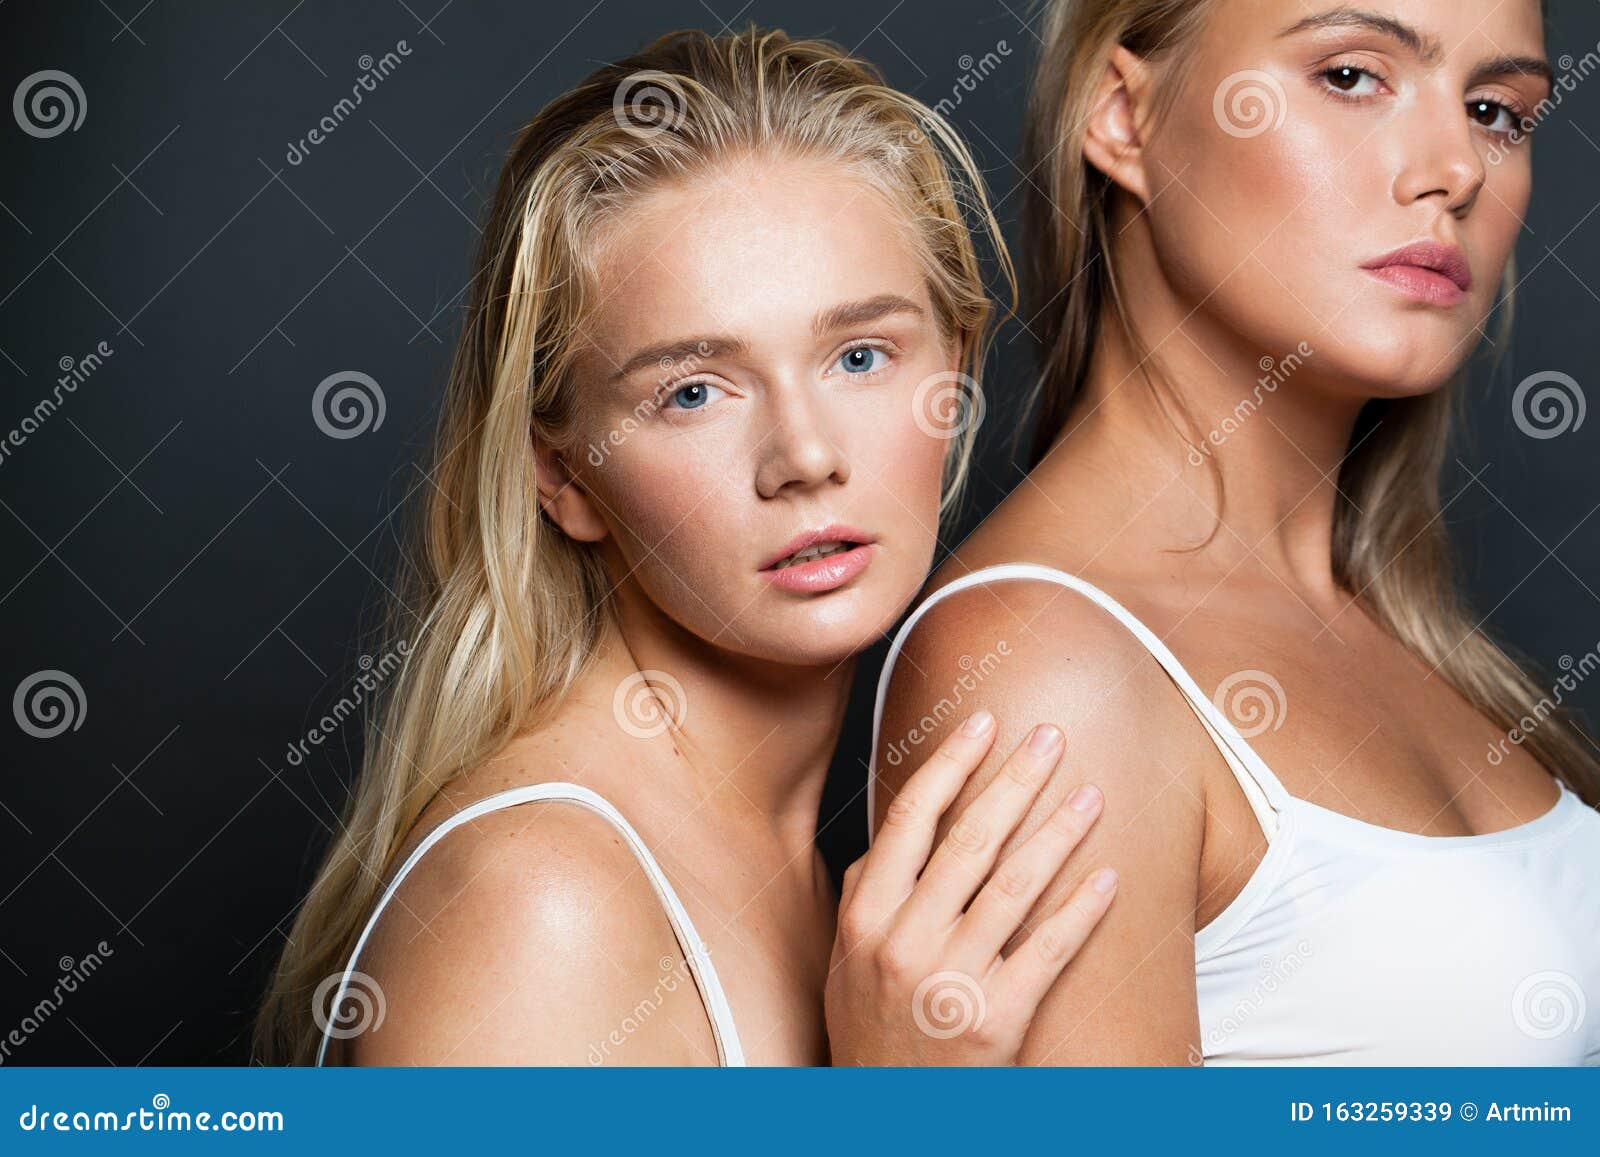 blonde-models-women-healthy-girls-portrait-163259339.jpg